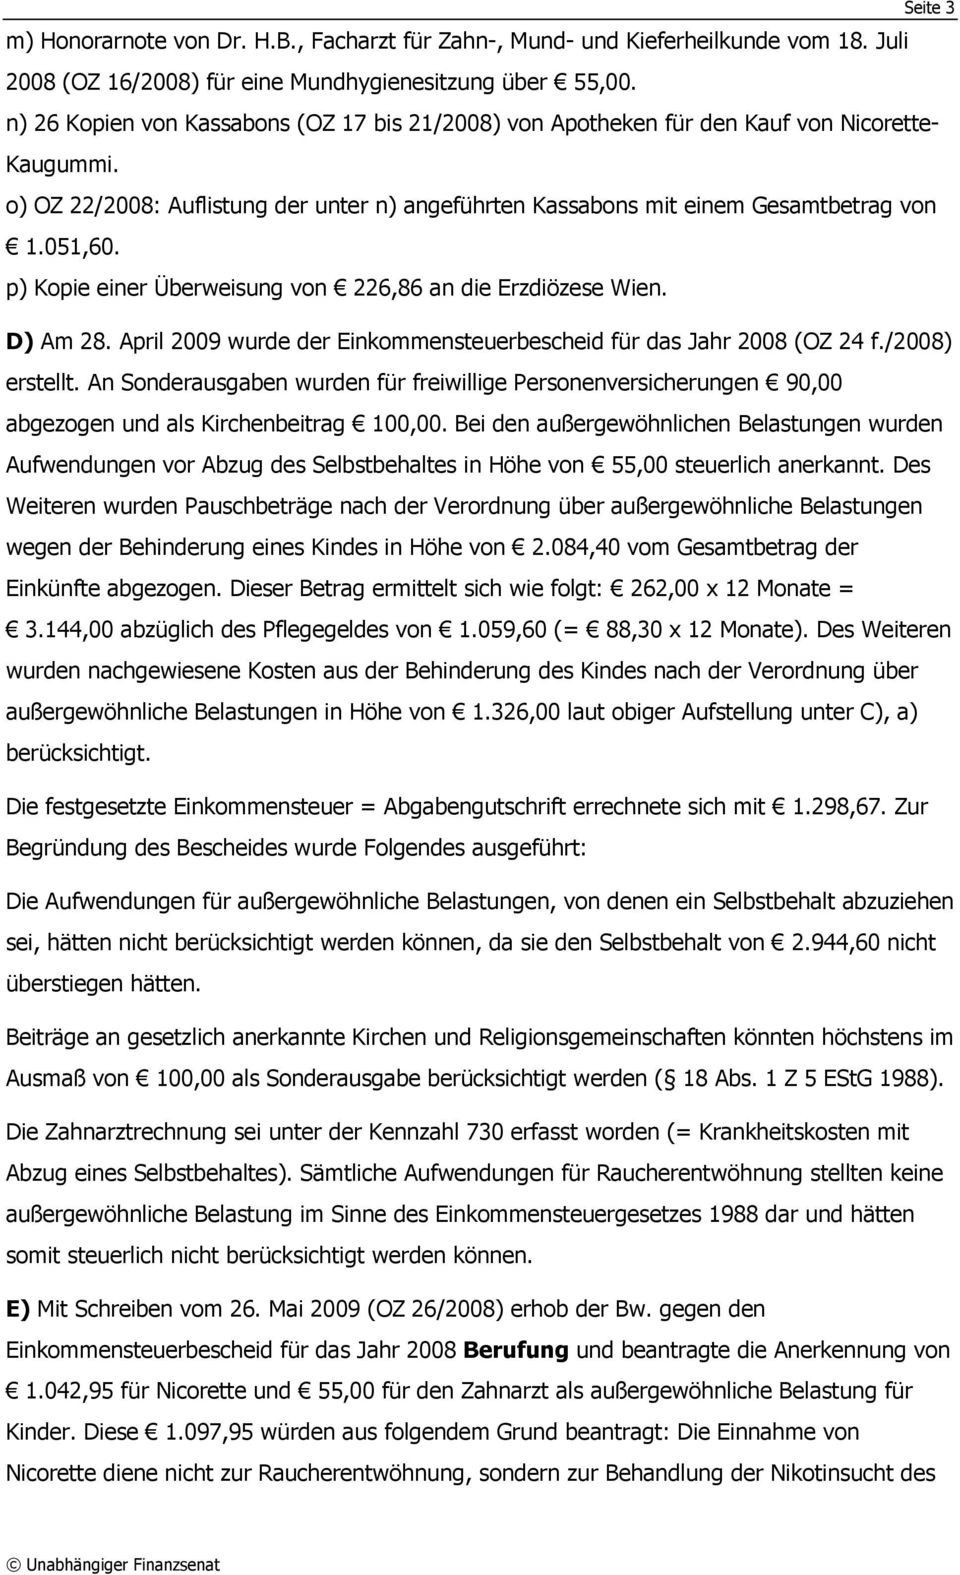 p) Kopie einer Überweisung von 226,86 an die Erzdiözese Wien. D) Am 28. April 2009 wurde der Einkommensteuerbescheid für das Jahr 2008 (OZ 24 f./2008) erstellt.